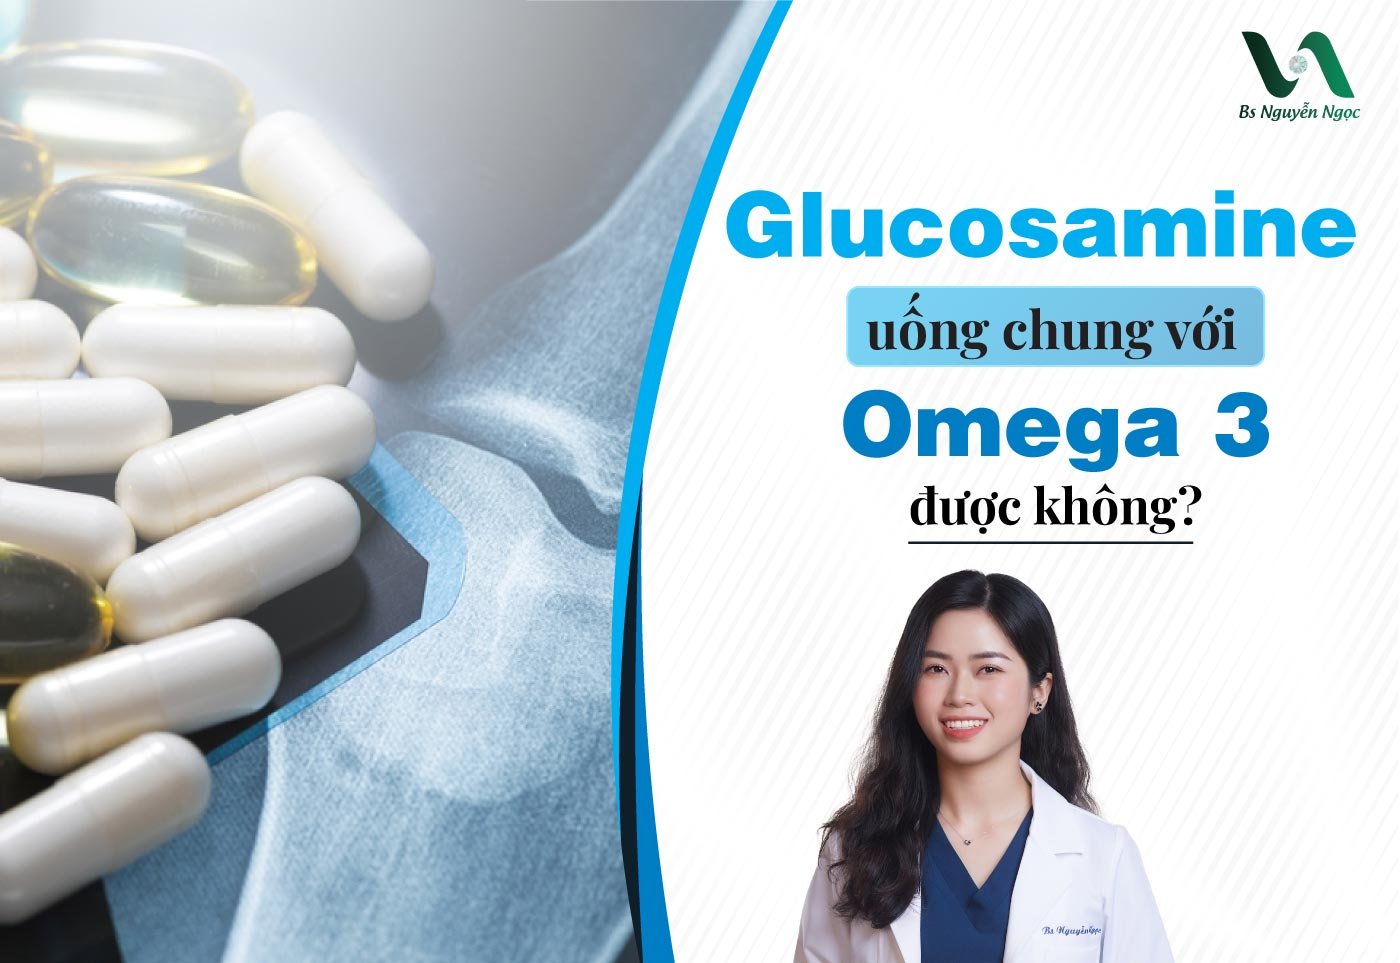 Glucosamine uống chung với Omega 3 được không?